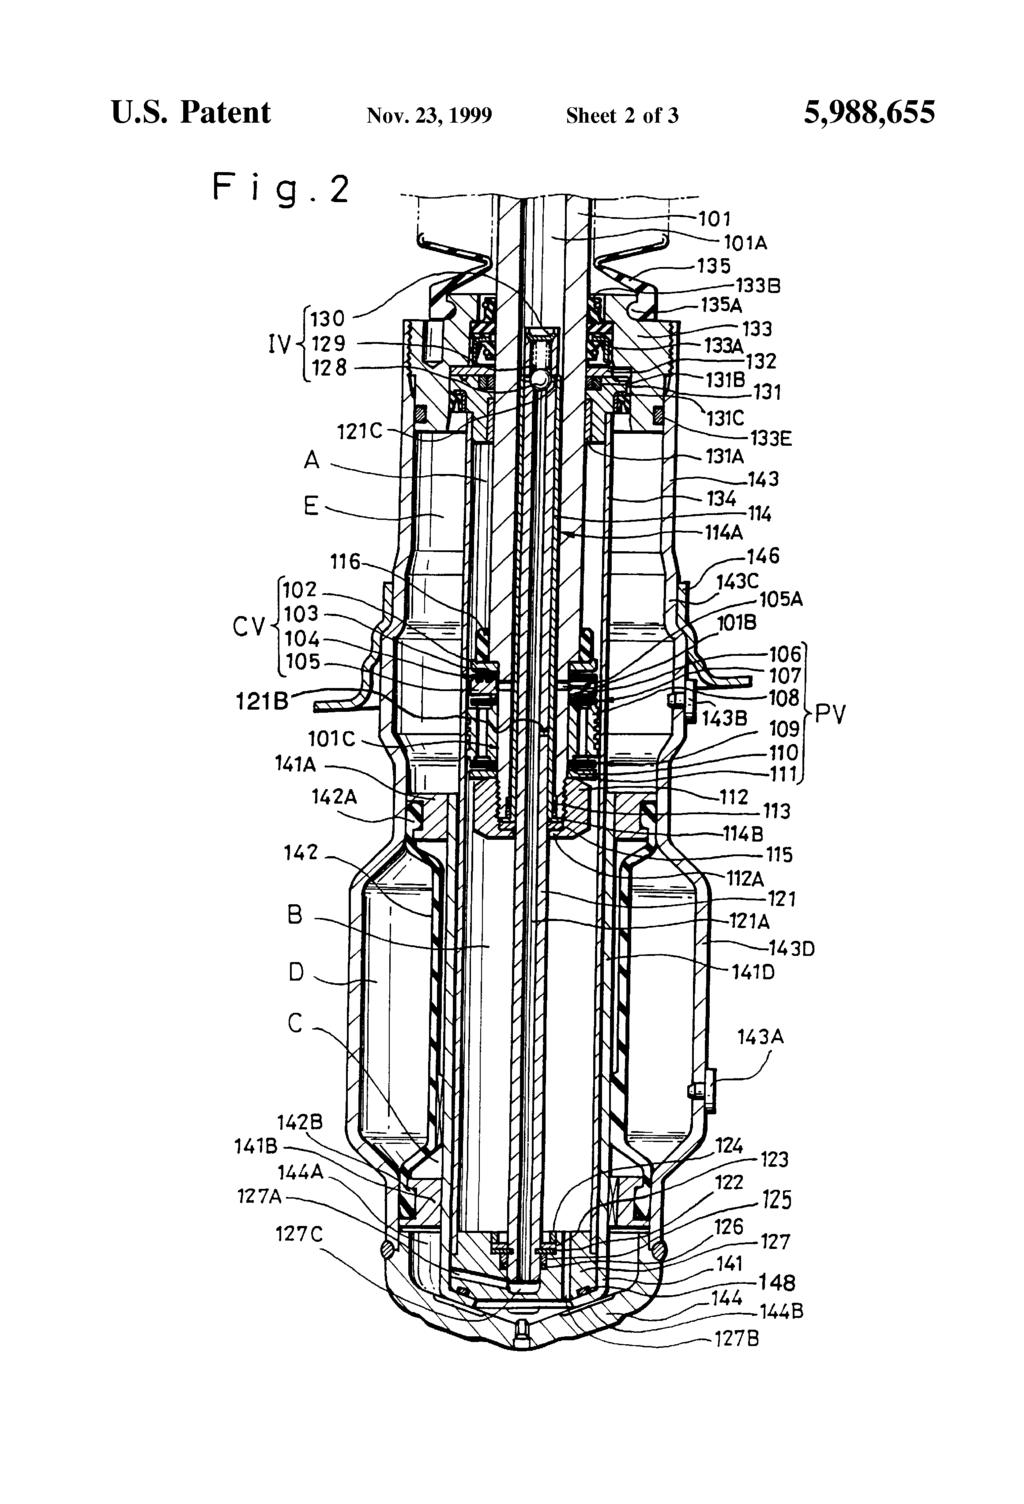 U.S. Patent Nov.